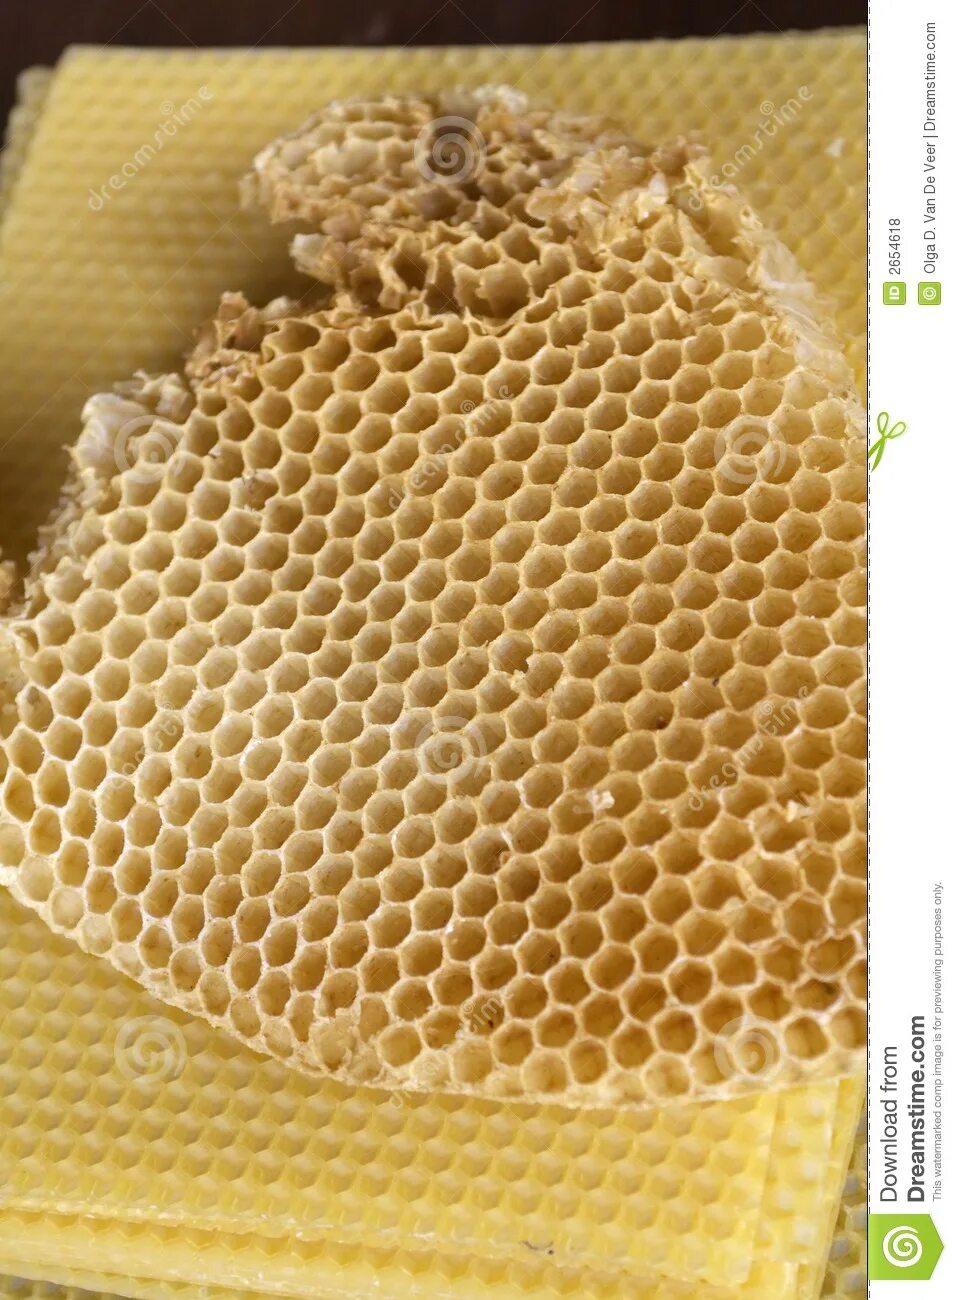 Искусственная восковая основа пчелиных сот 6 букв. Восковые соты для пчел. Соты пчелиные пчелиный воск. Восковые пластины для пчел. Восковая пластина для сот.